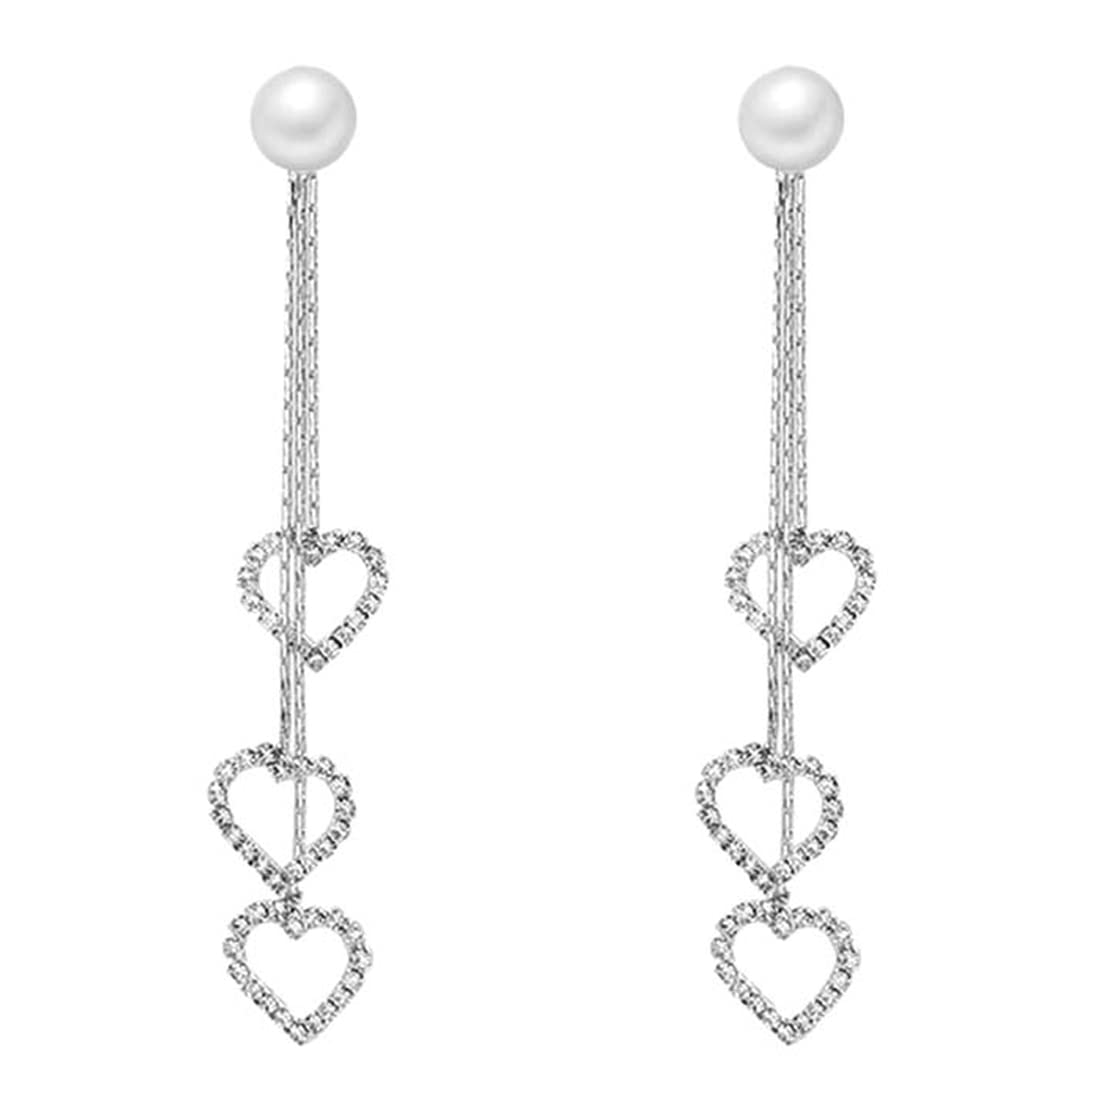 Yellow Chimes Earrings for Women & Girls Silver Pearl Dangler Earrings | Silver Toned Heart Shaped Long Chain Danglers Earrings for Women | Birthday & Anniversary Gift